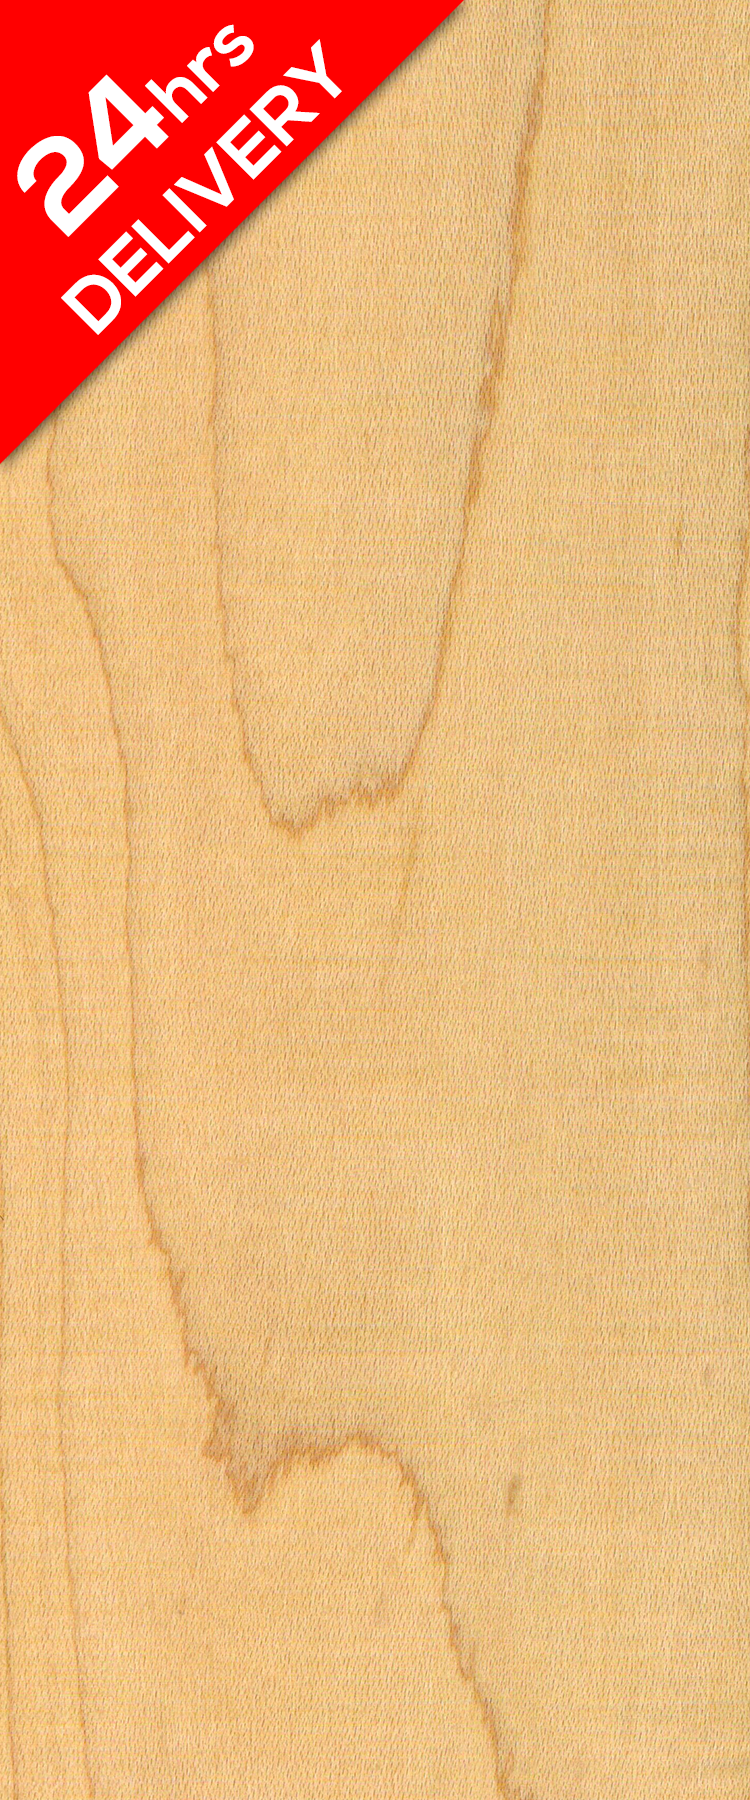 Harmony Maple 2 Layer Wooden Floor